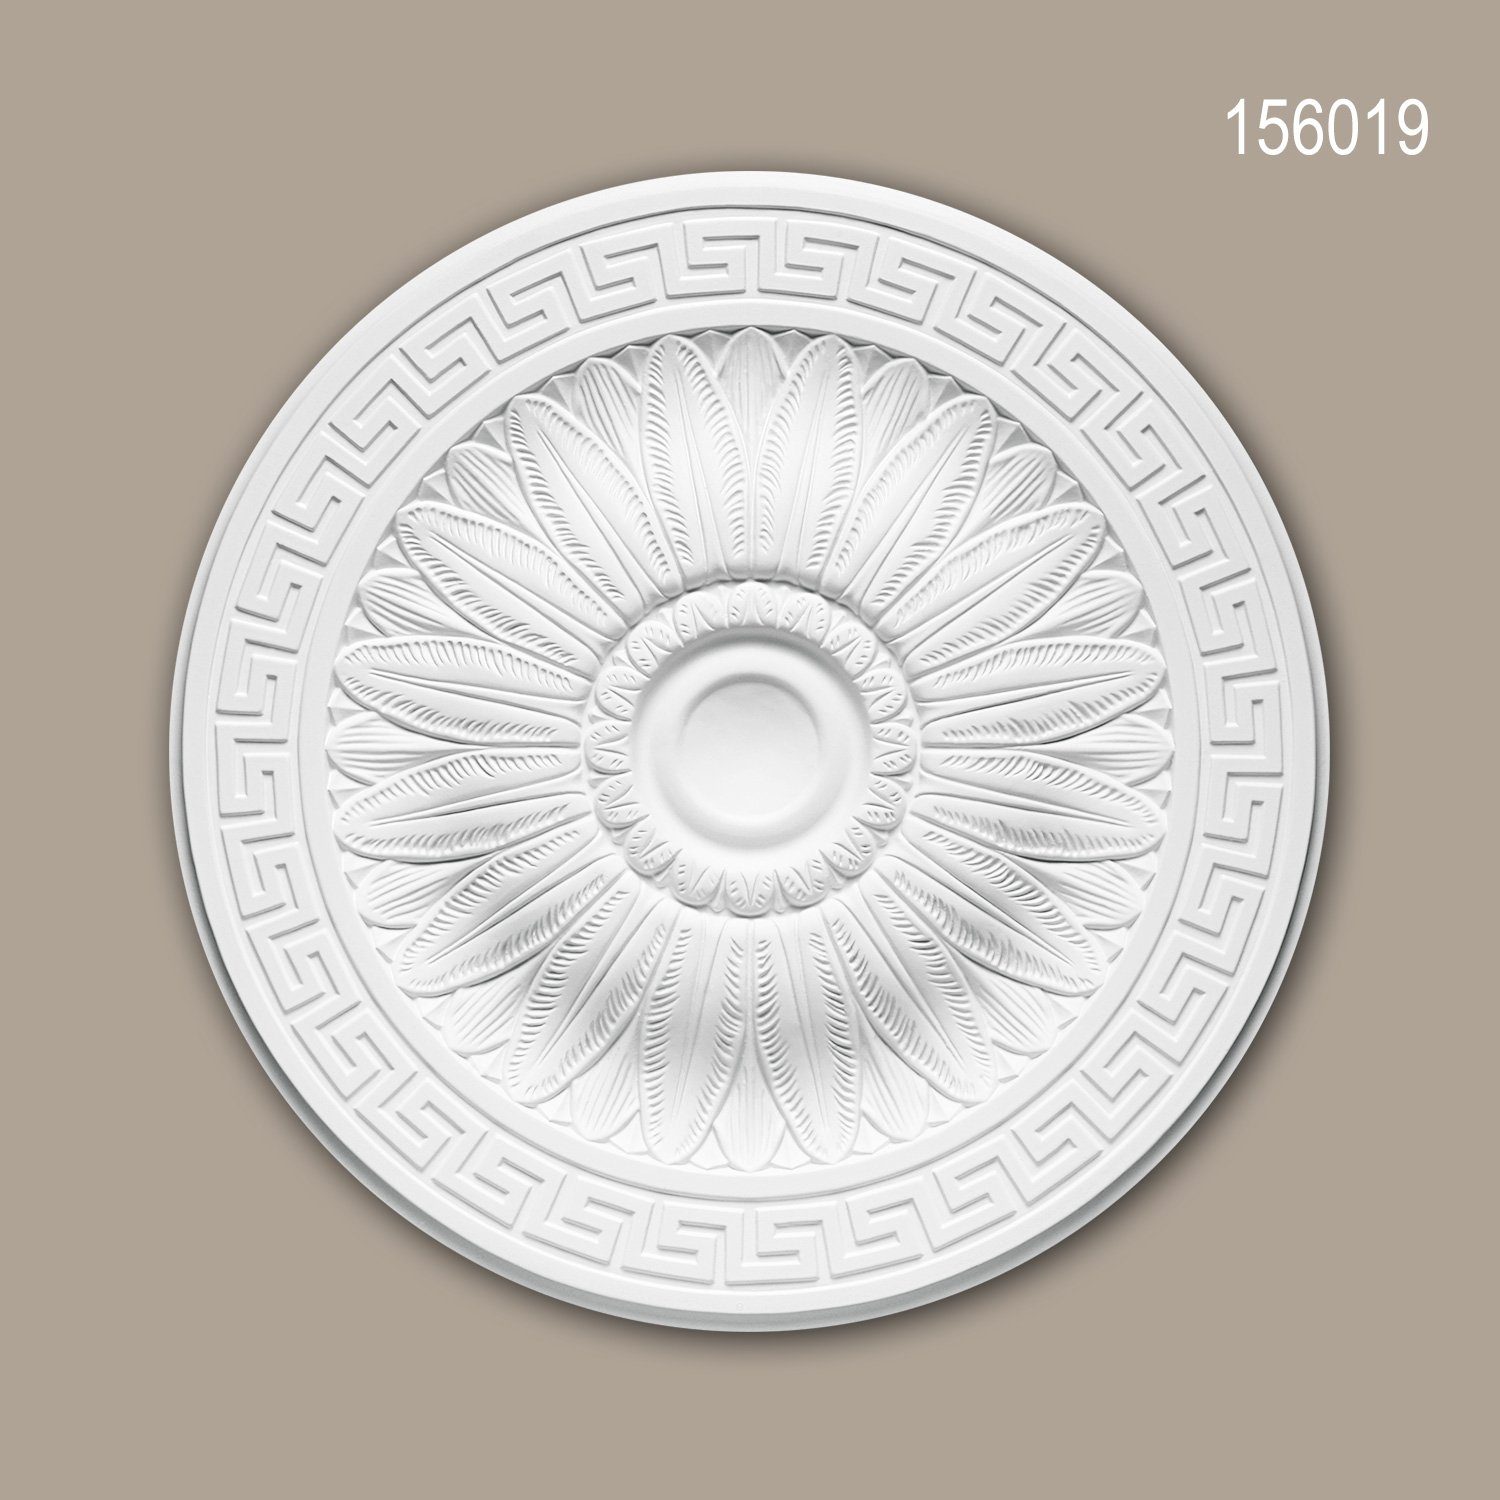 Profhome Decken-Rosette 156019 (Rosette, 1 St., Deckenrosette, Medallion, Stuckrosette, Deckenelement, Zierelement, Durchmesser 51 cm), weiß, vorgrundiert, Stil: Neo-Klassizismus